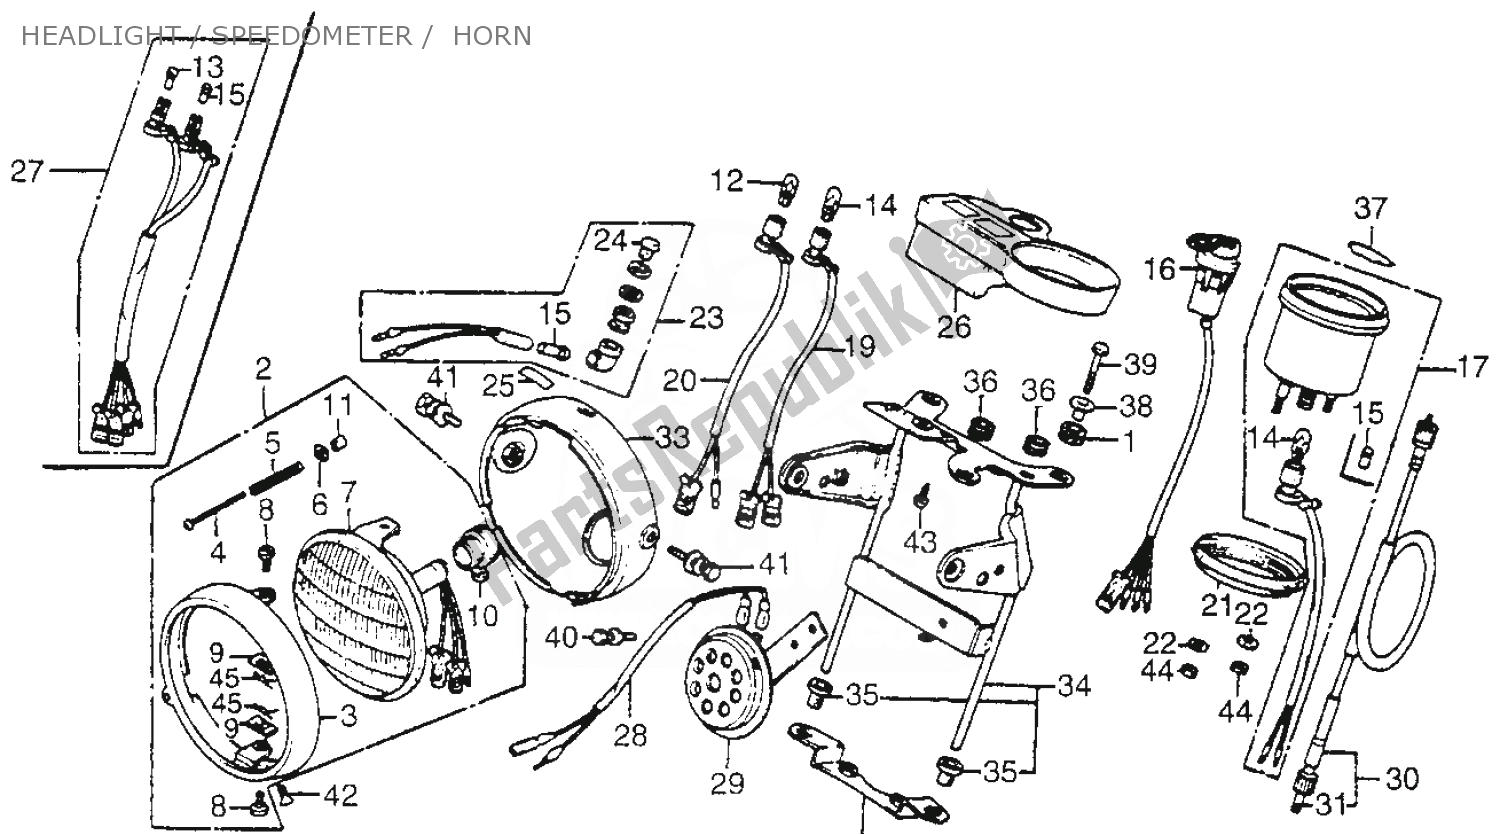 Todas as partes de Headlight / Speedometer / Horn do Honda CT 70 Trail 1981